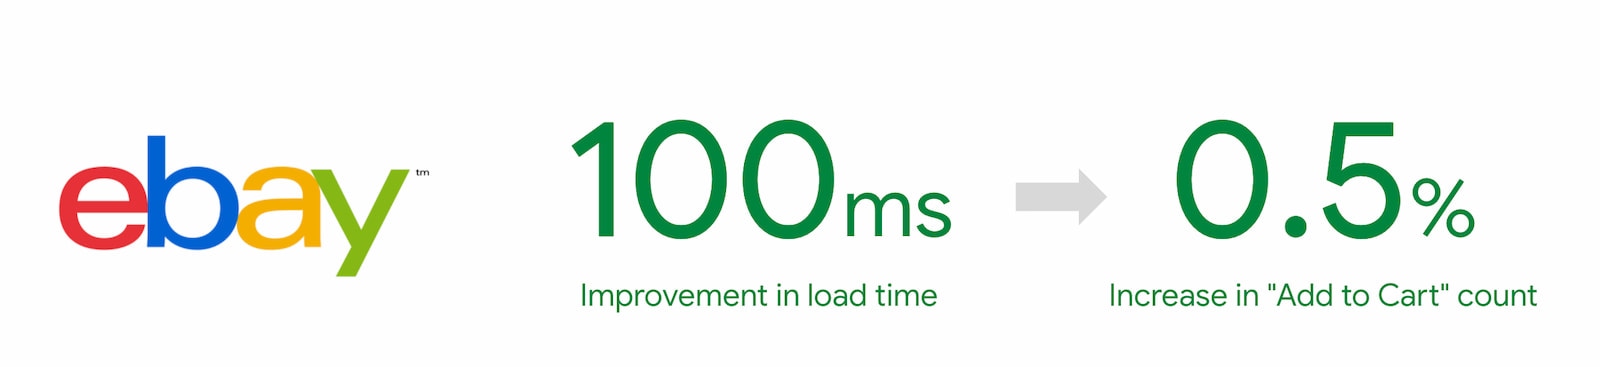 Una mejora de 100 ms en el tiempo de carga resultó en un aumento del 0.5% en el uso de la función de agregar al carrito para eBay